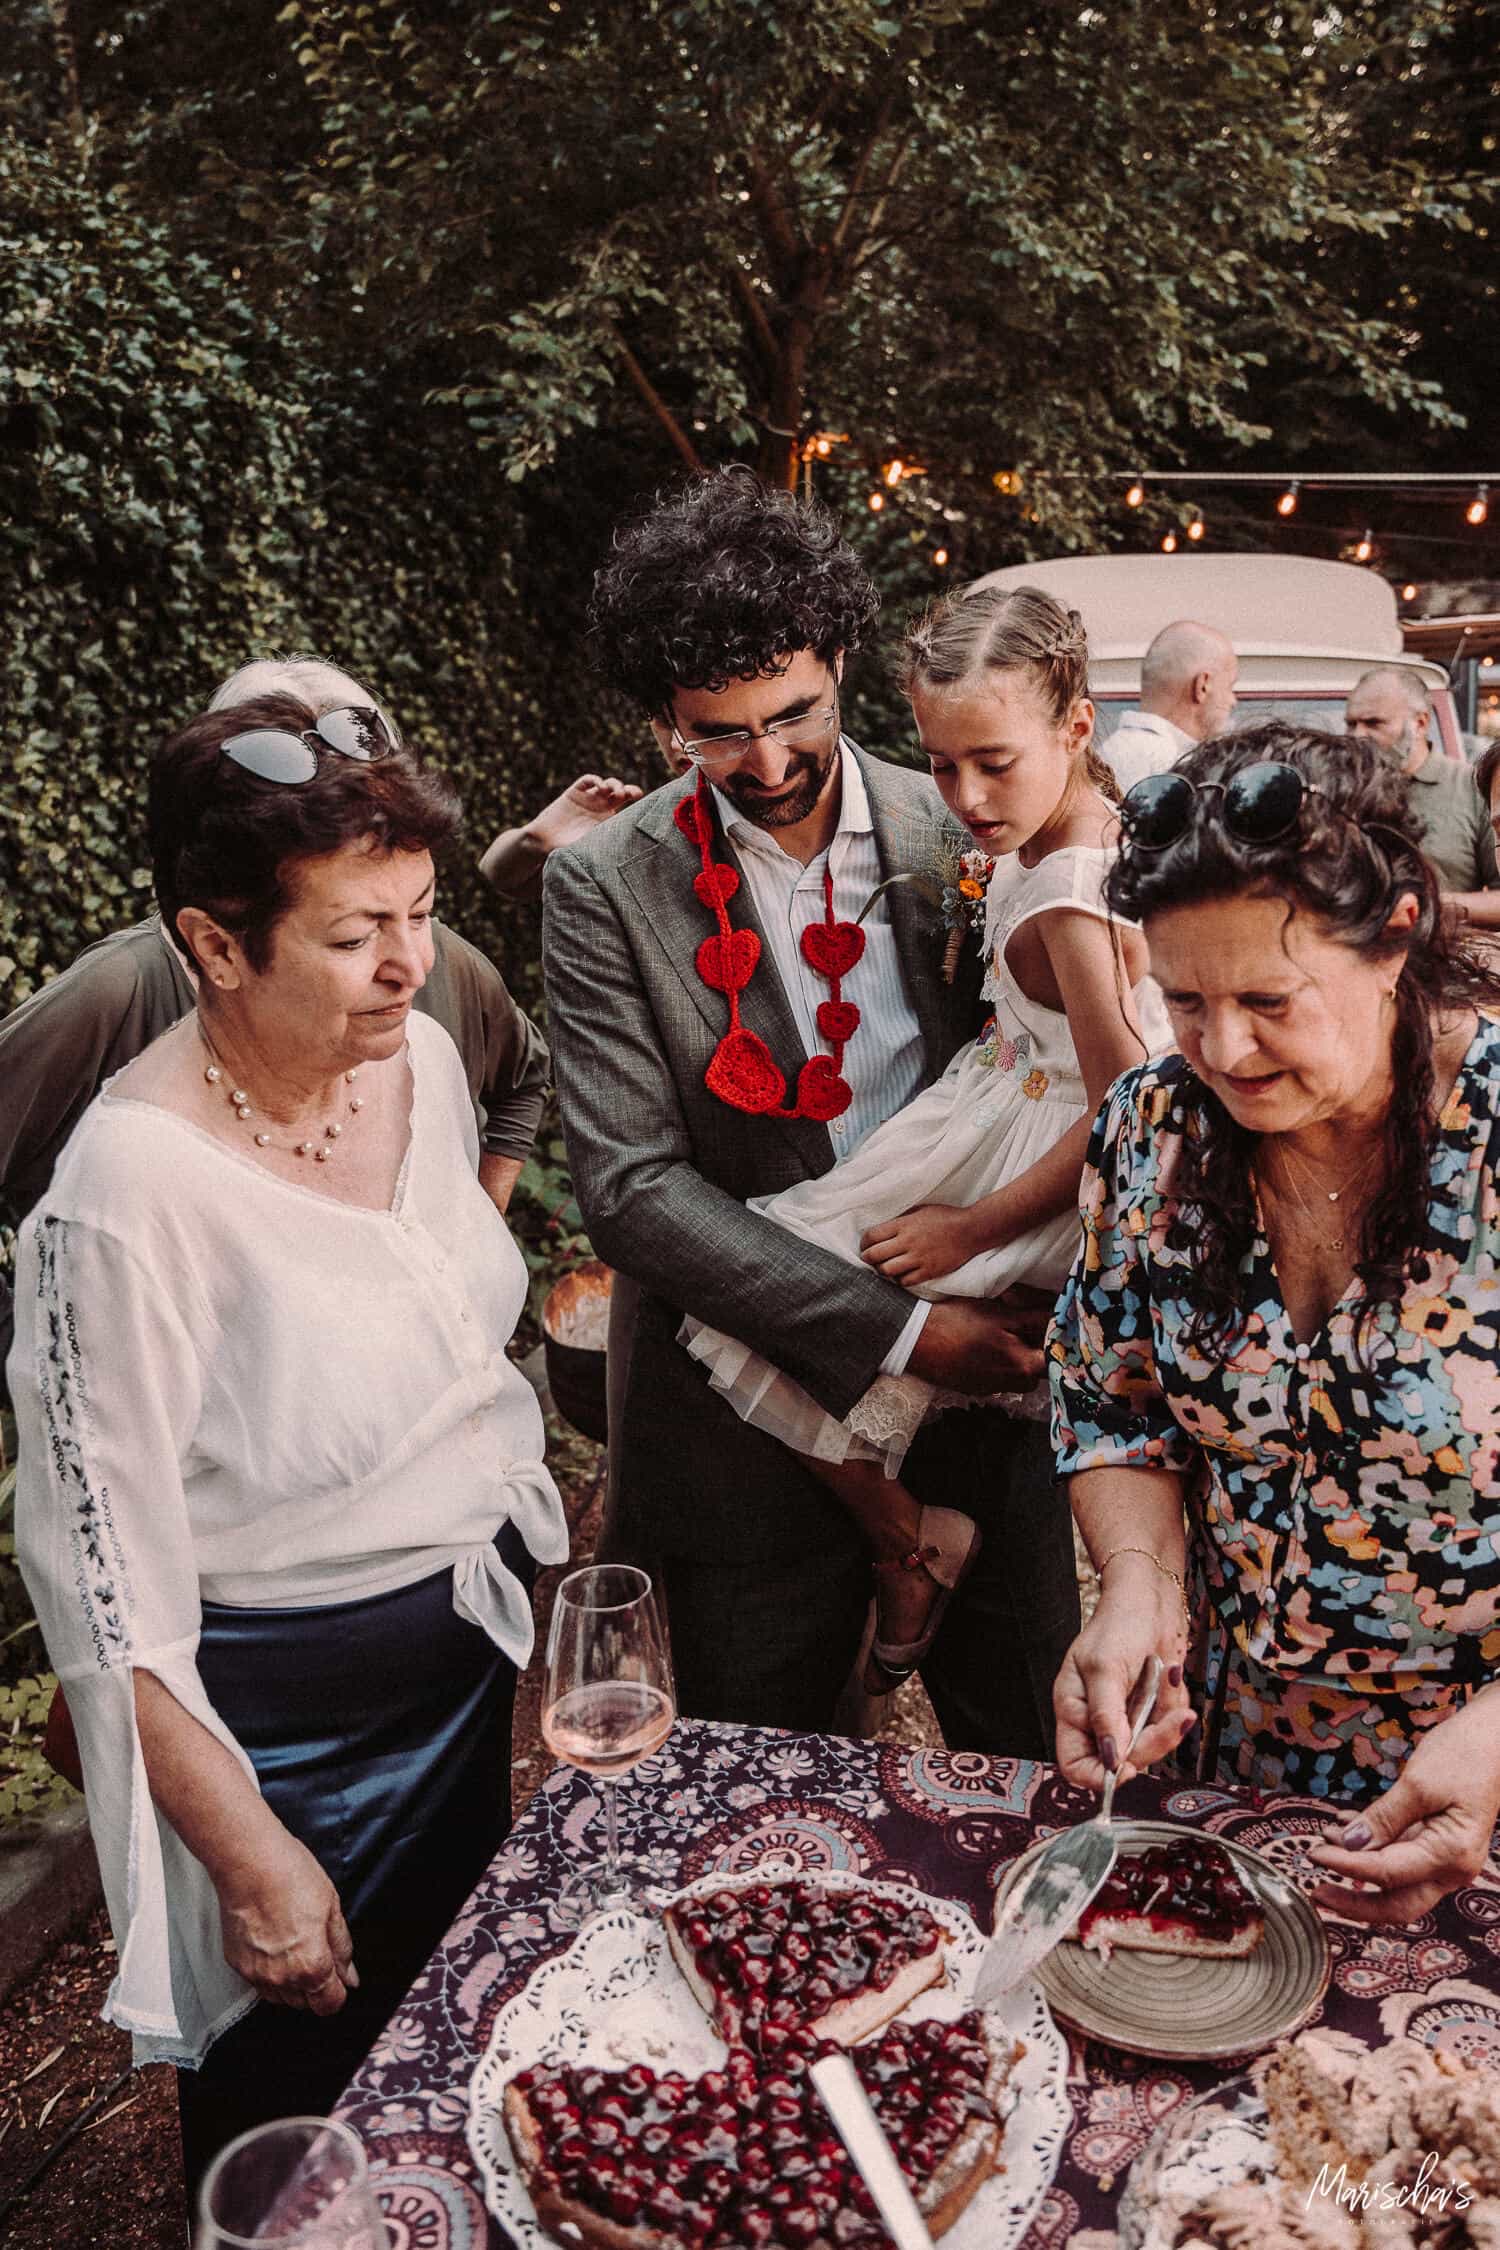 Bruidsfotograaf voor spiritueel trouwen in de natuur in Valkenburg